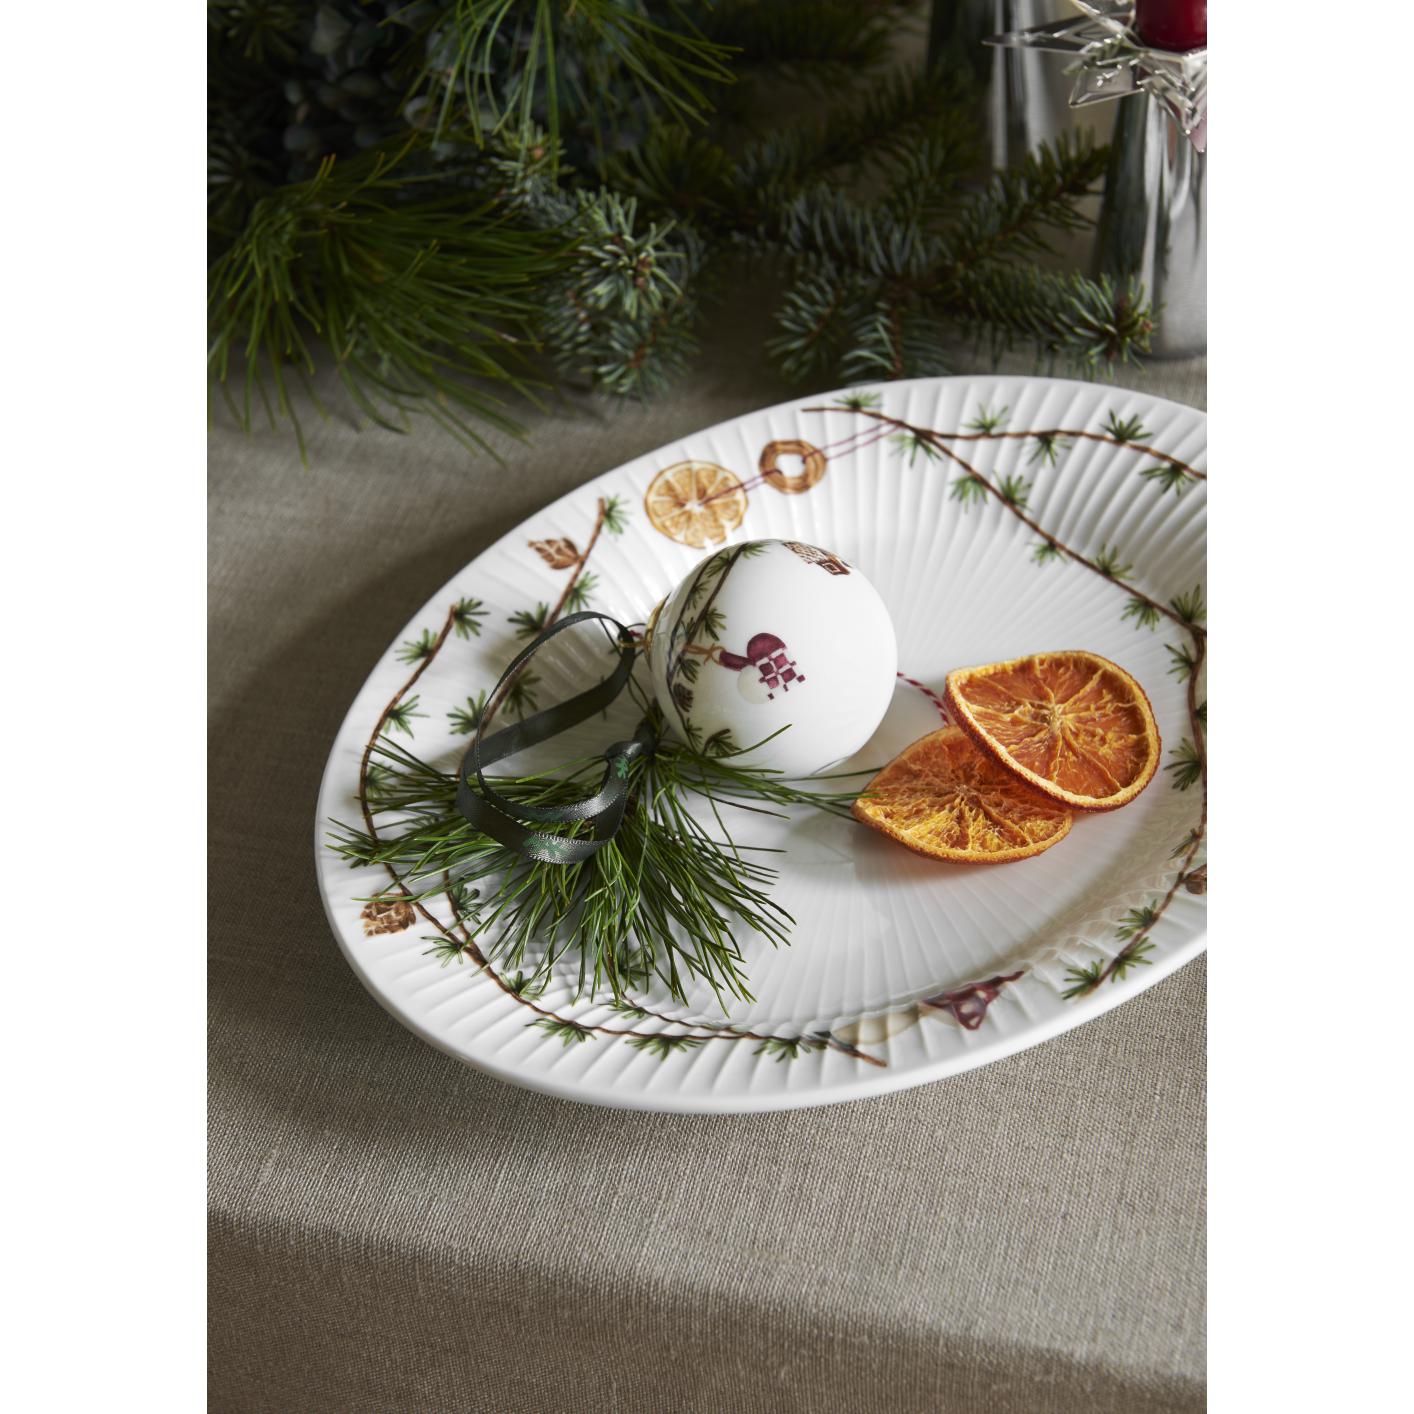 Kähler Hammershøi jul oval skål 22,5x28,5 hvid med dekoration